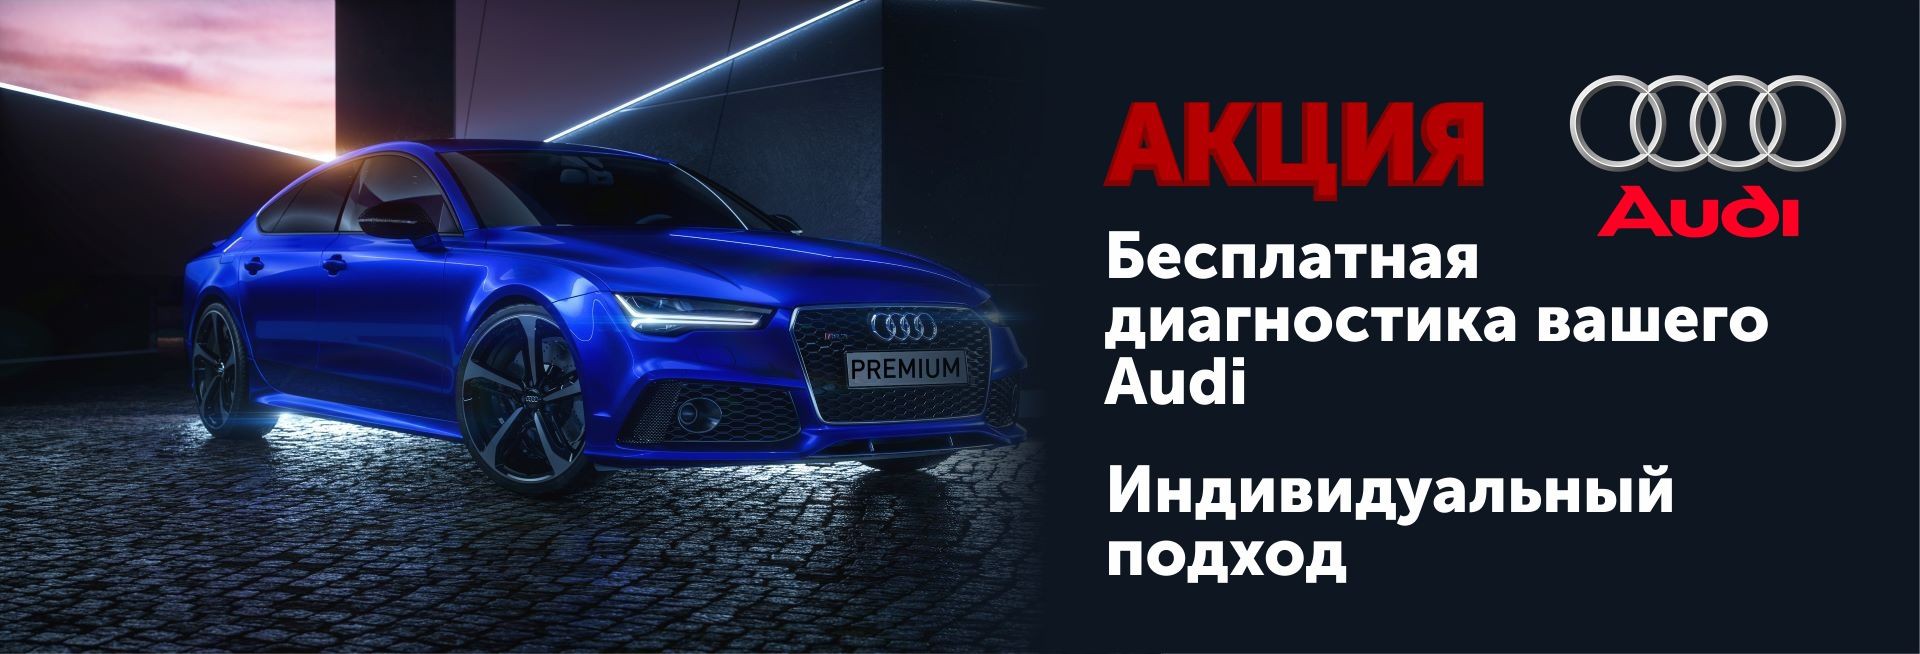 .Акция: Бесплатная диагностика вашего Audi